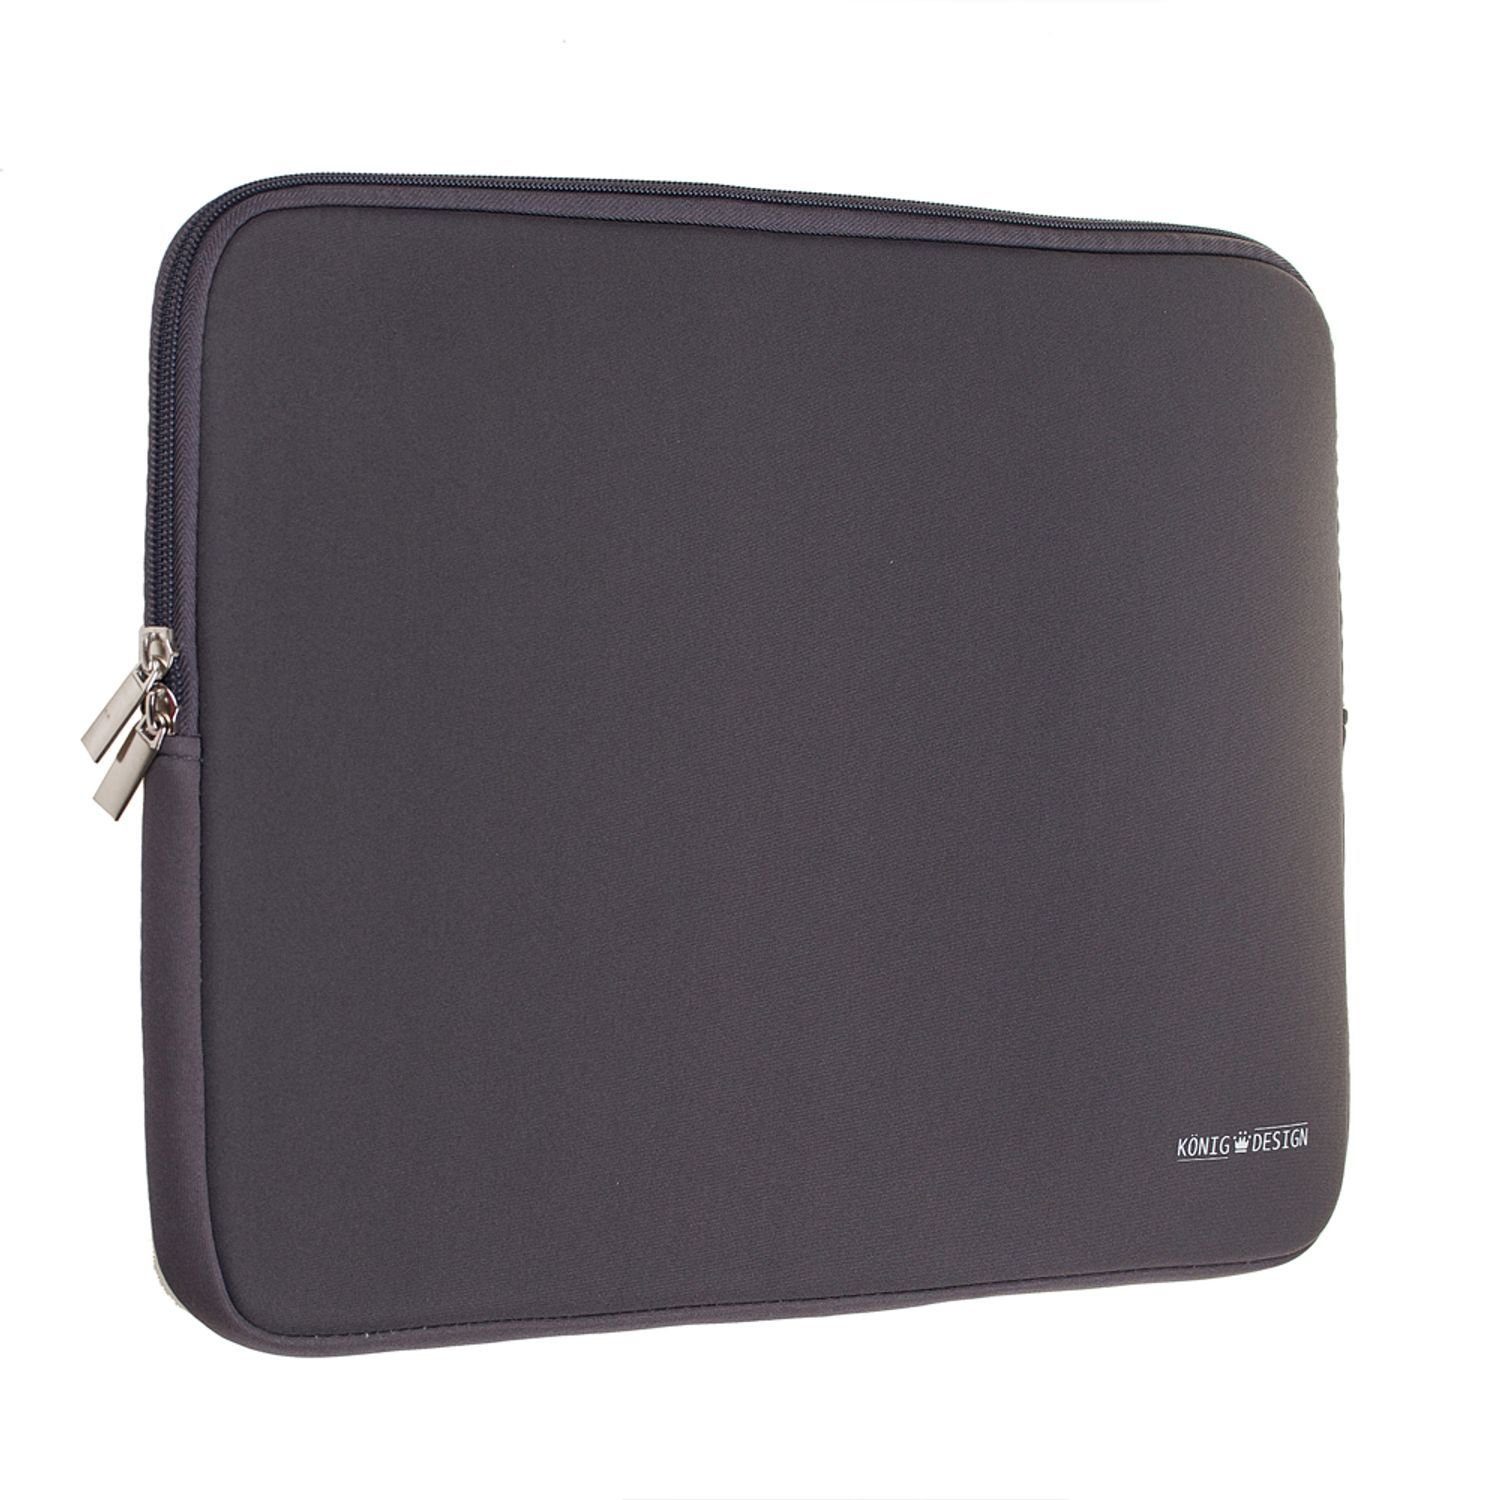 König Design Laptop-Hülle Universal Notebooktasche 13 - 17 Zoll Tasche Hülle Laptop Case Cover 33 cm (13 Zoll), weiches Innenfutter zum Schutz vor Kratzern